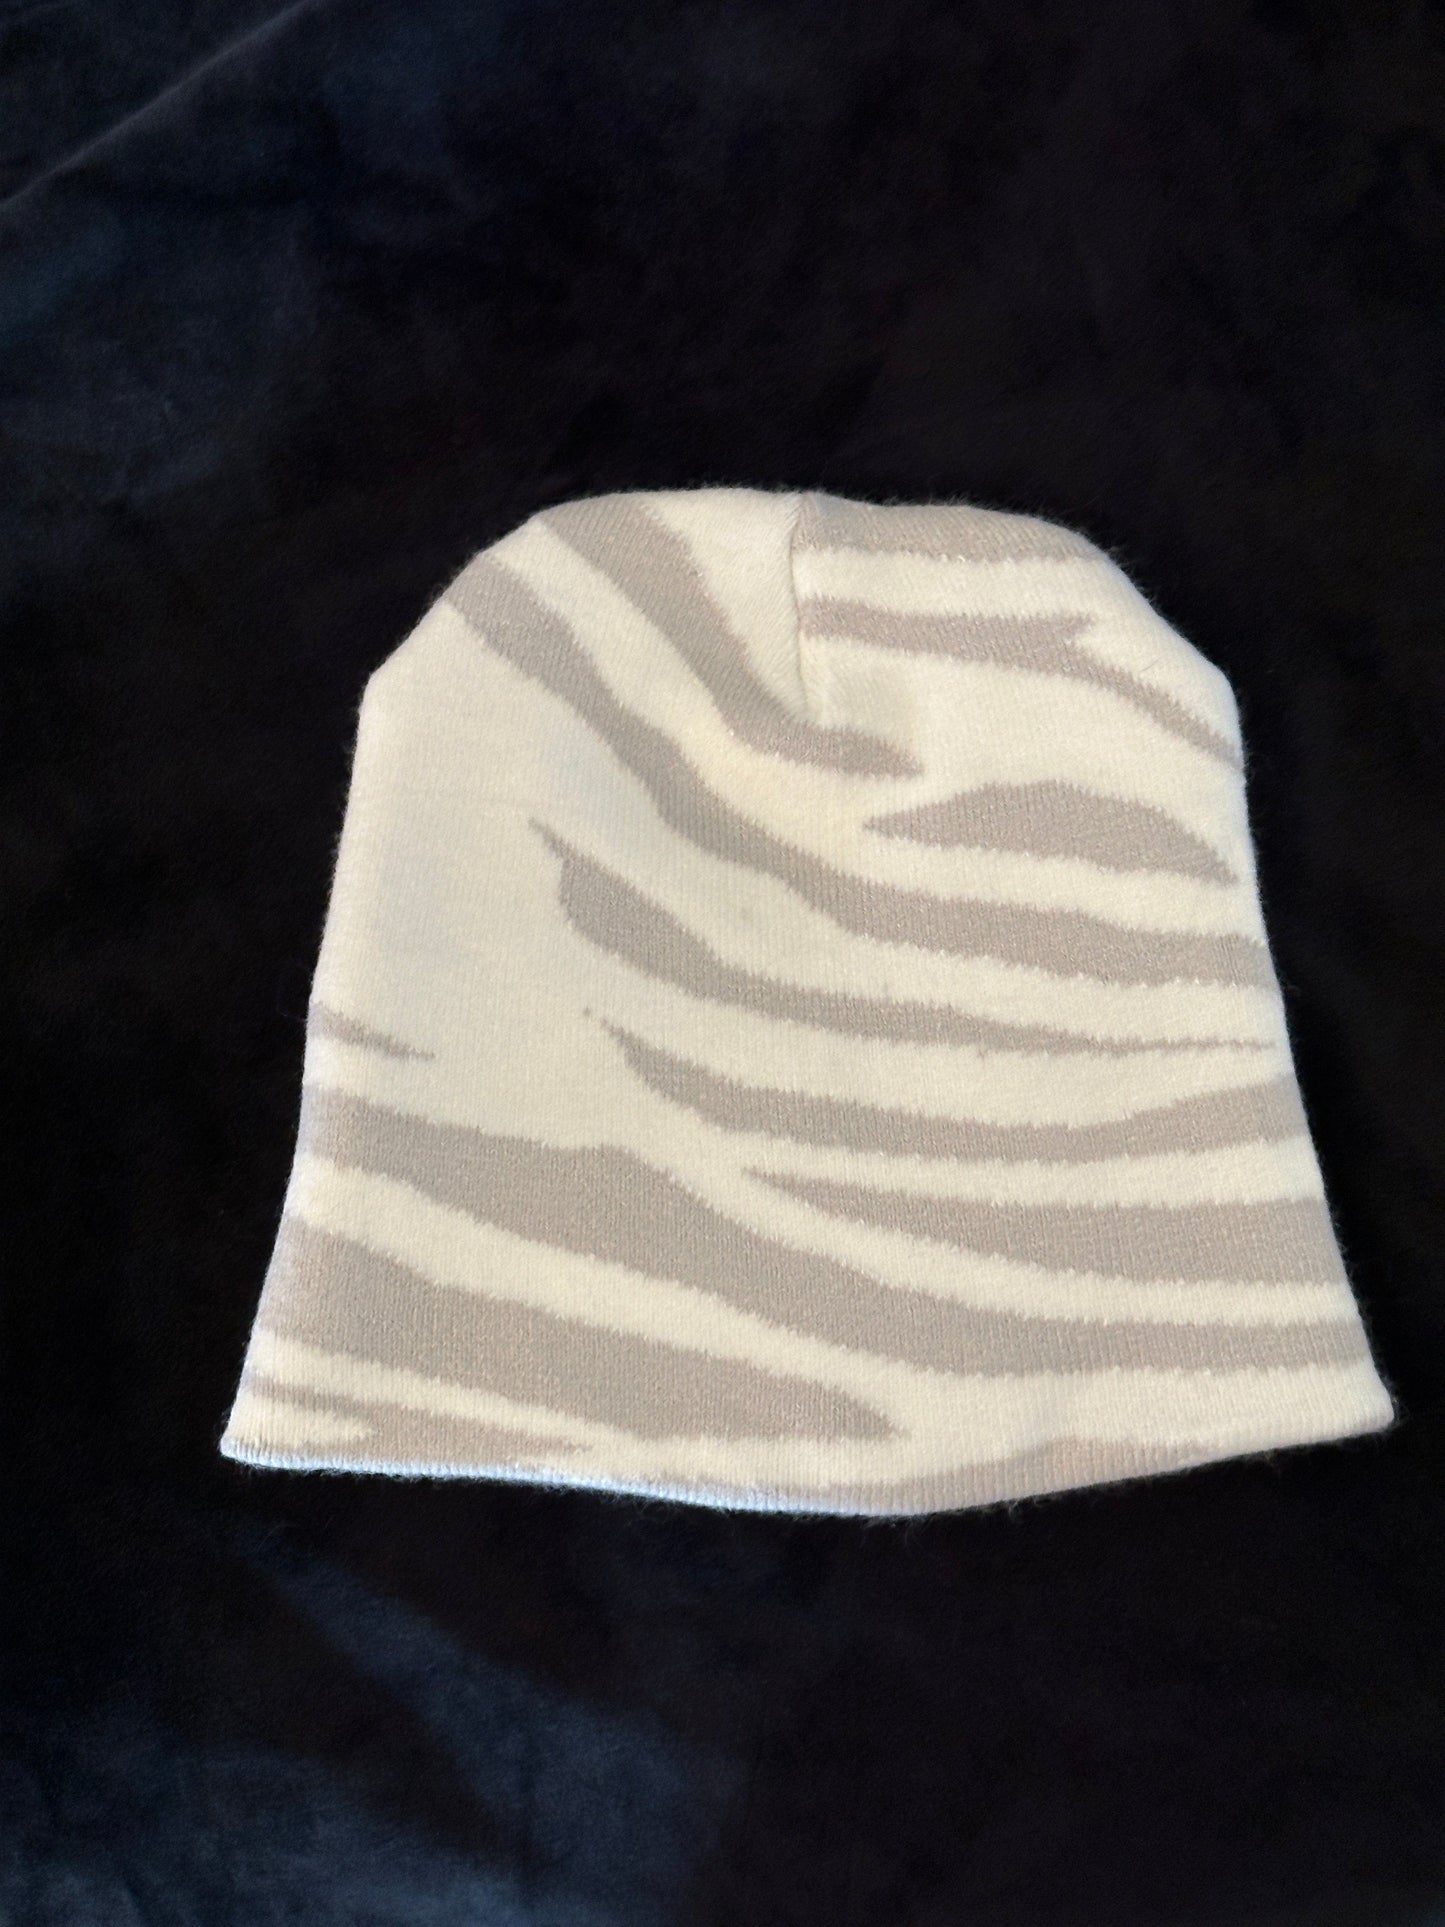 Zebra Beanie Posh Society Boutique Hats Visit poshsocietyhb